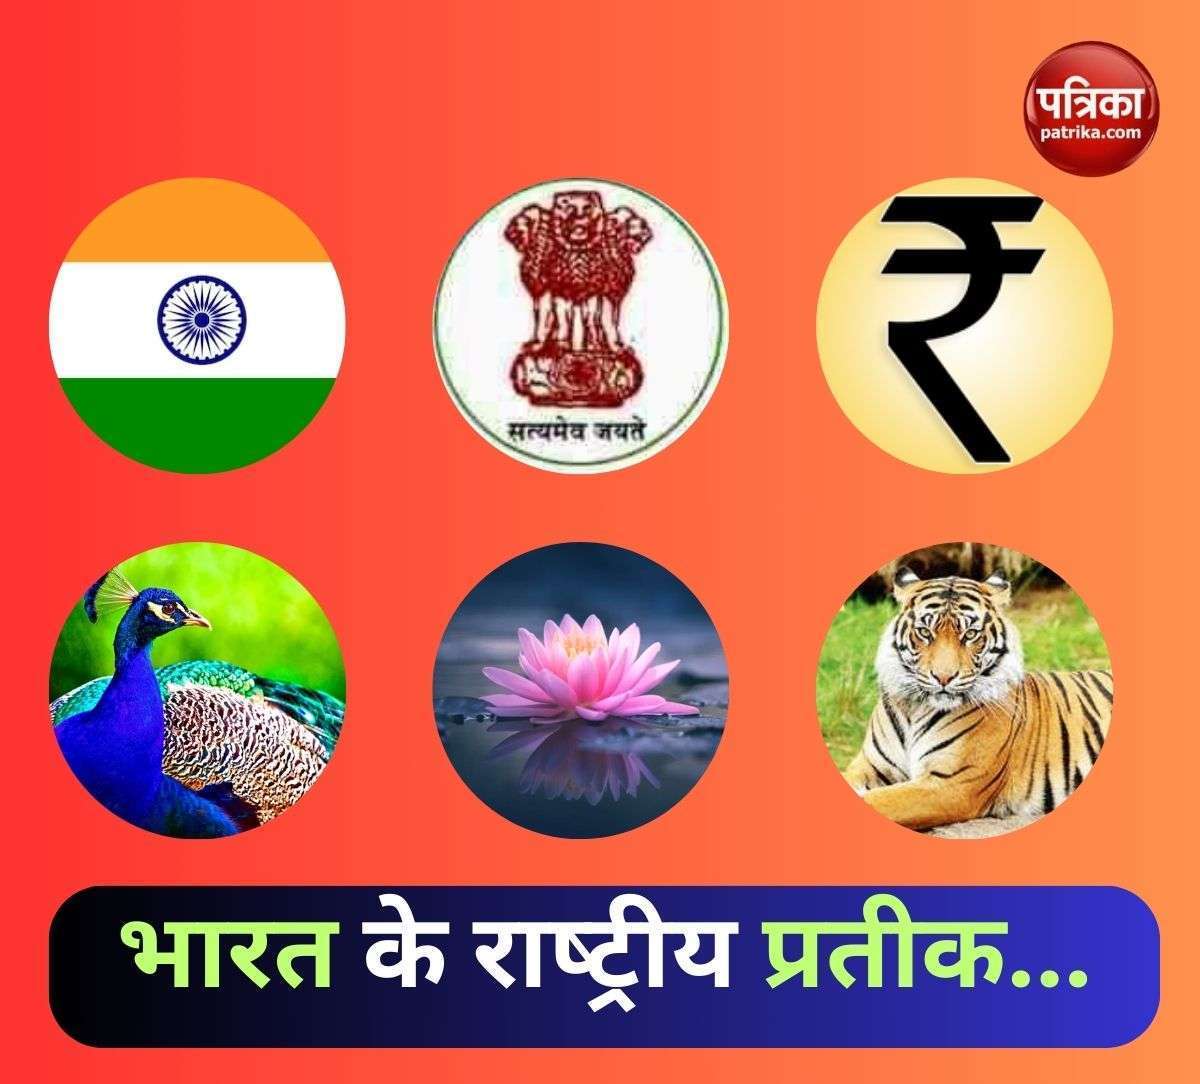 भारत की राष्‍ट्रीय पहचान के प्रतीकों की जानकारी सिर्फ एक क्लिक पर, यहां देखें